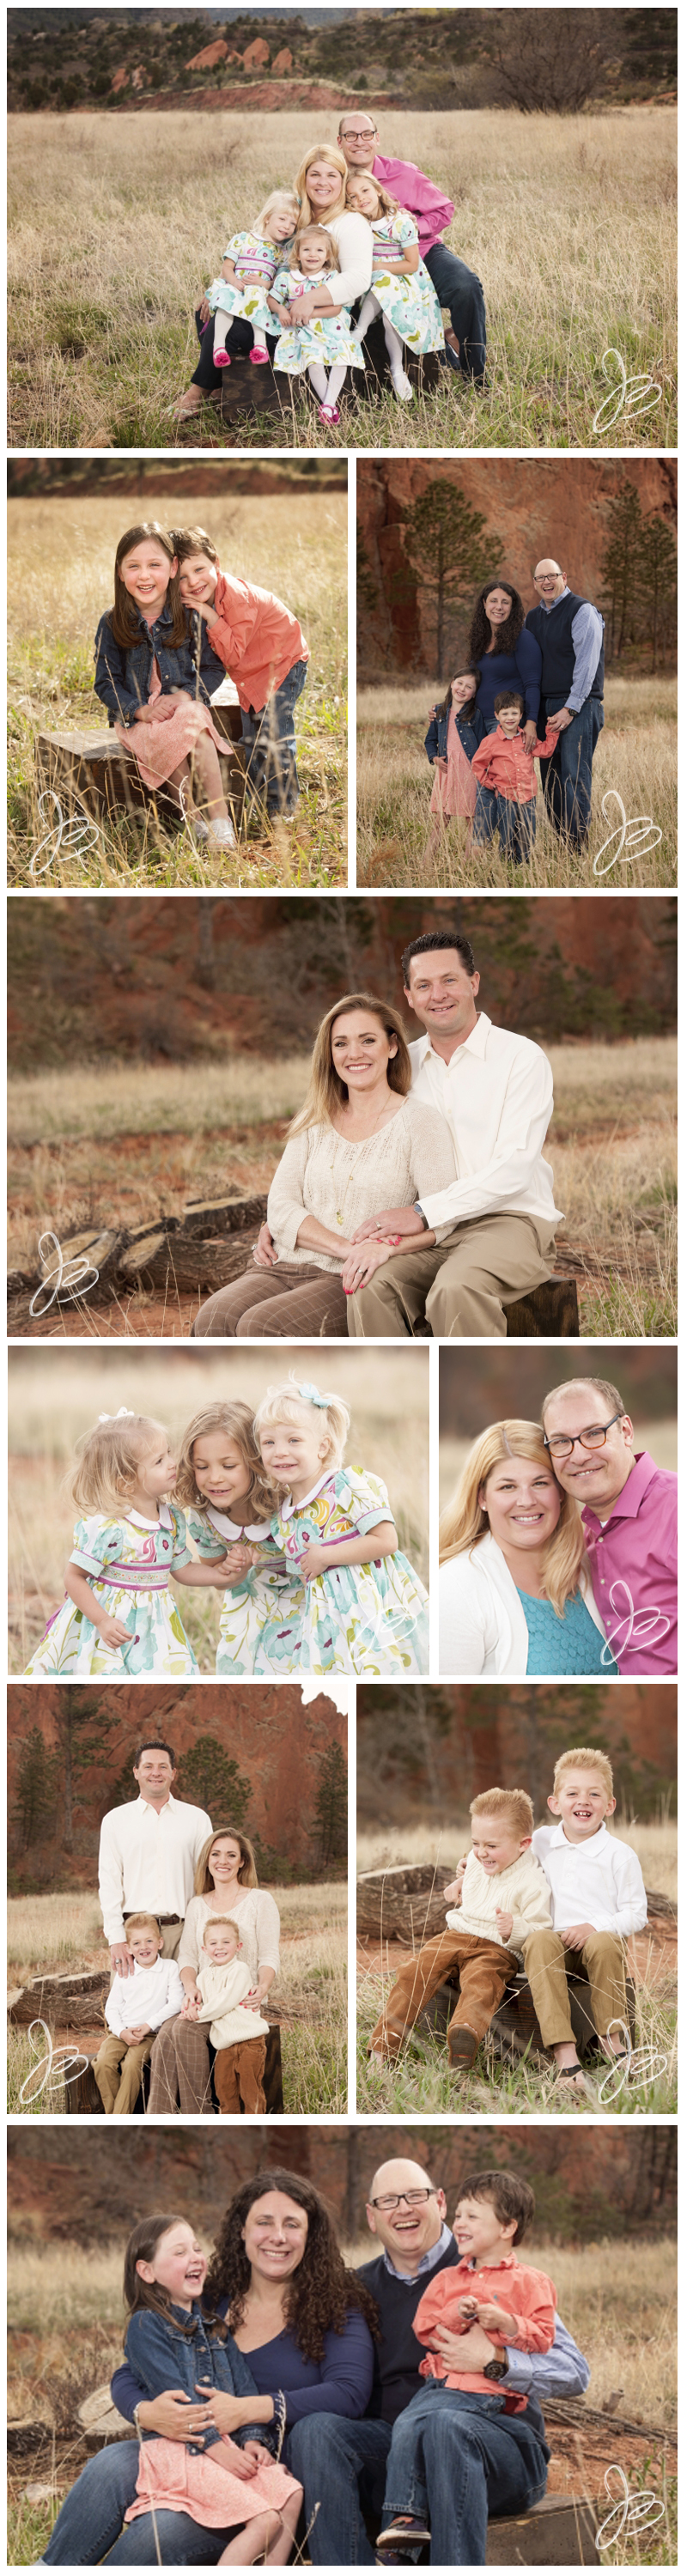 Colorado Springs Family Portraits Photographer